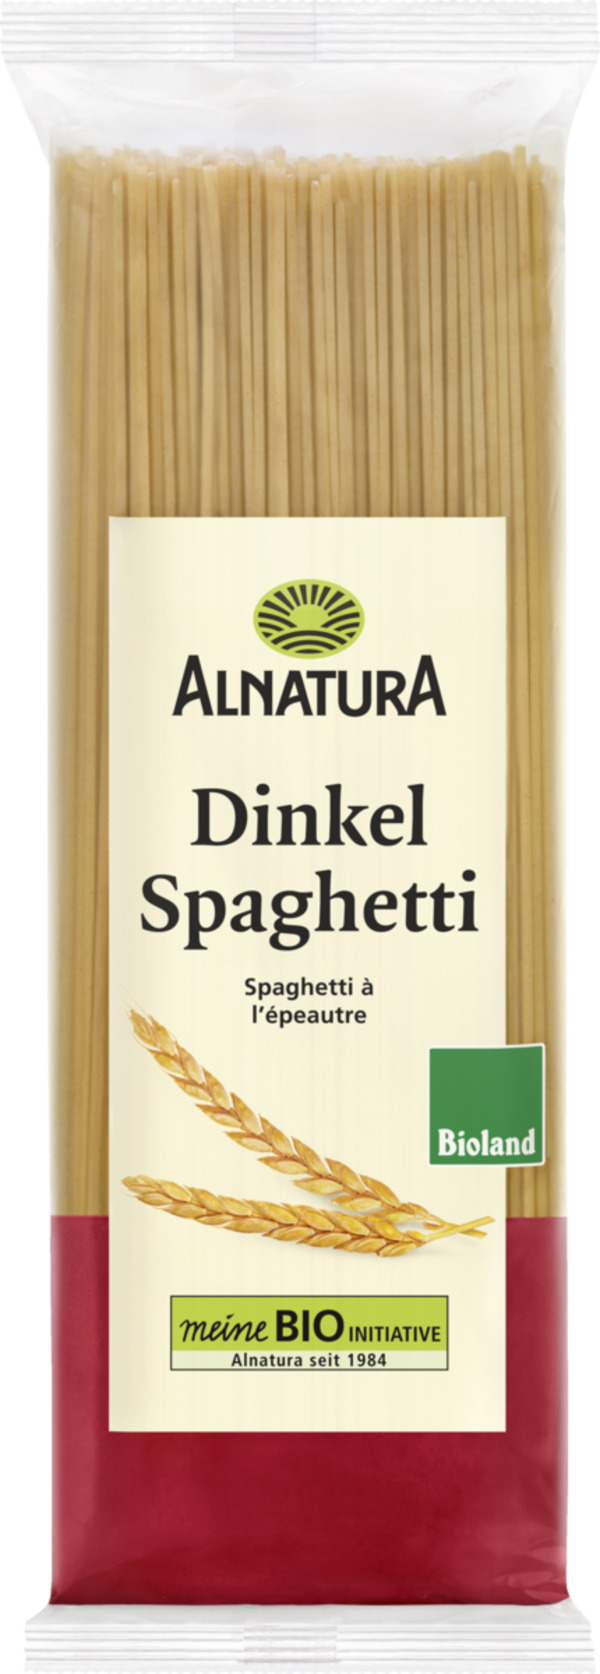 Bild 1 von Alnatura Bio Dinkel Spaghetti Bioland, 500 g